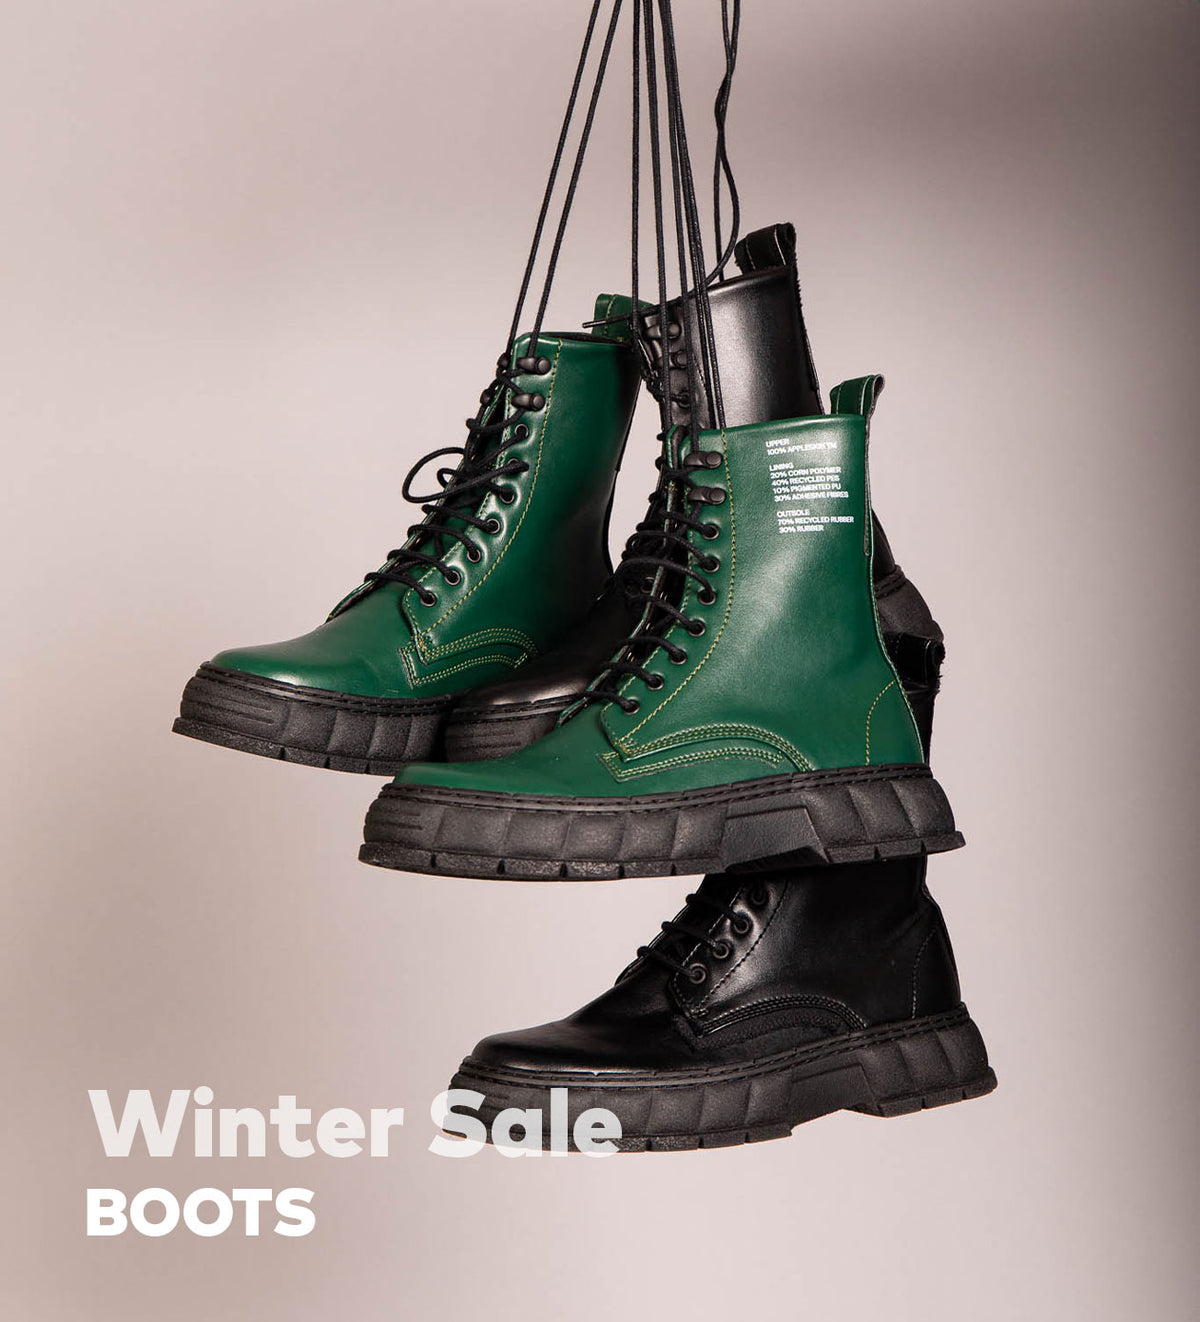 Winter Sale Boots — Footwear ZIGZAG